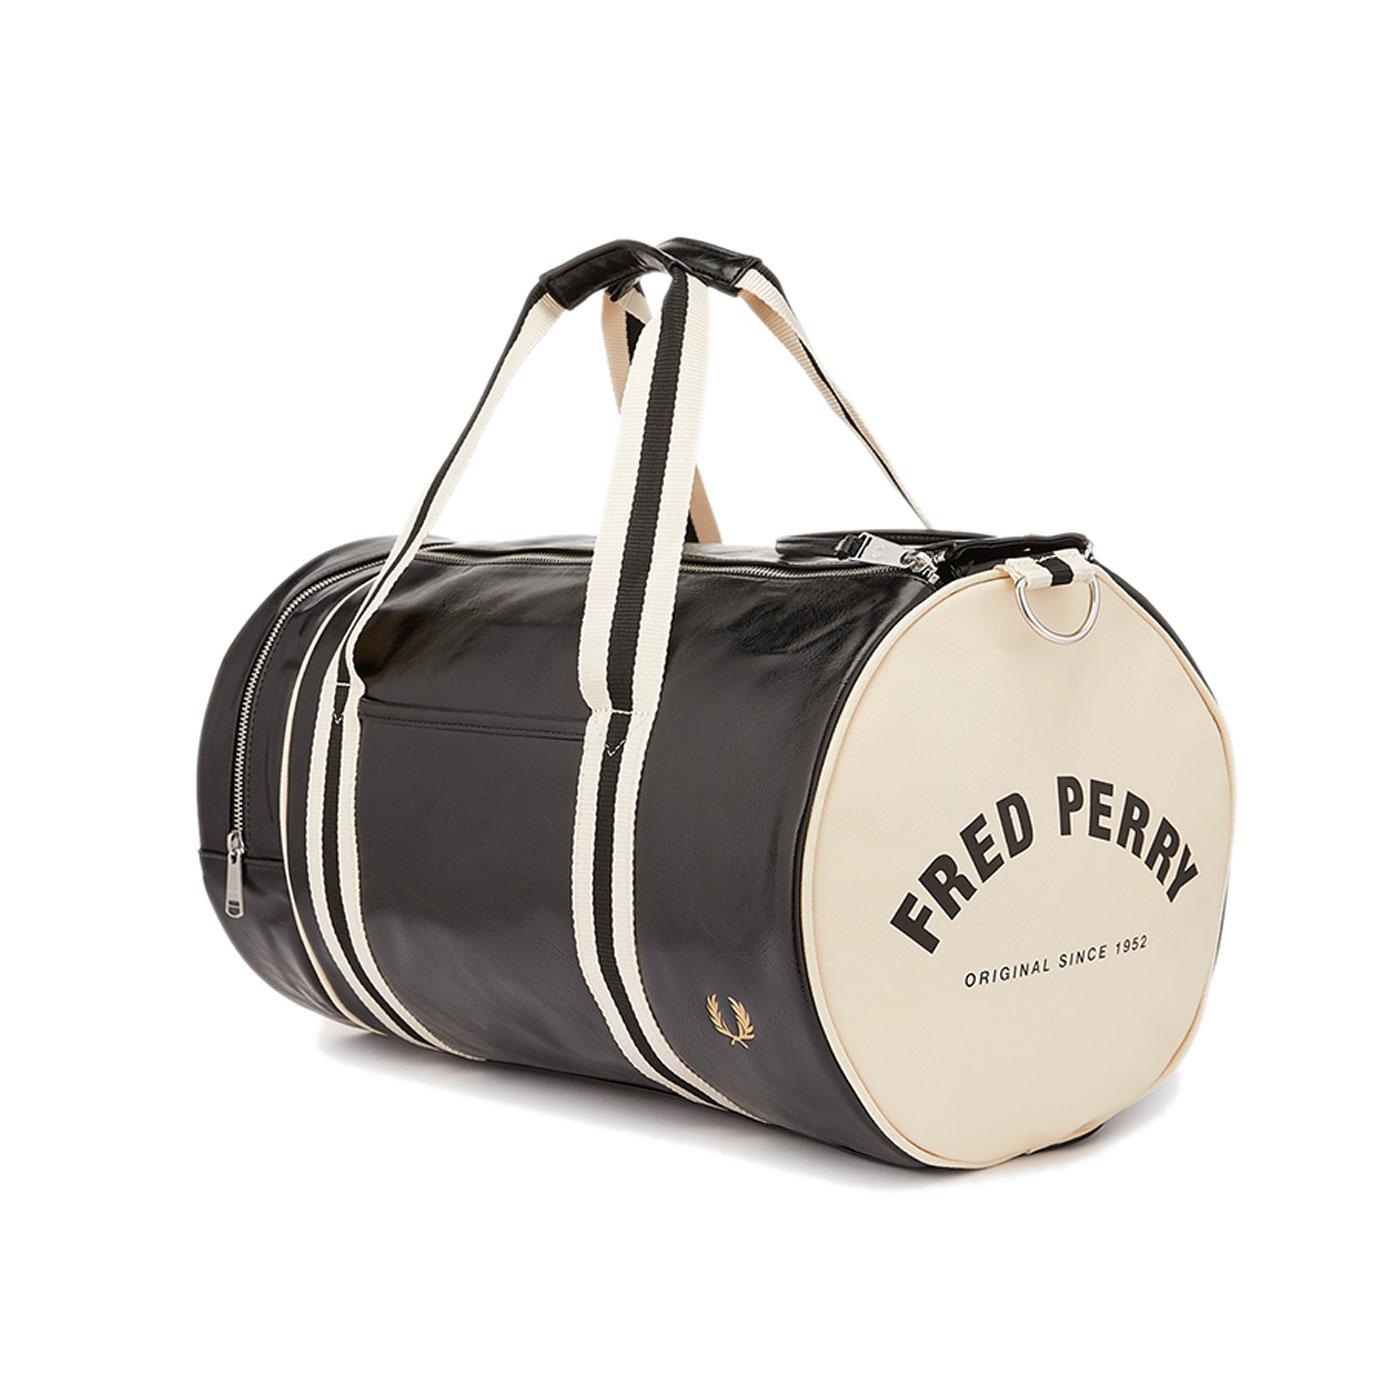 FRED PERRY Classic Retro Barrel Bag in Black & Ecru